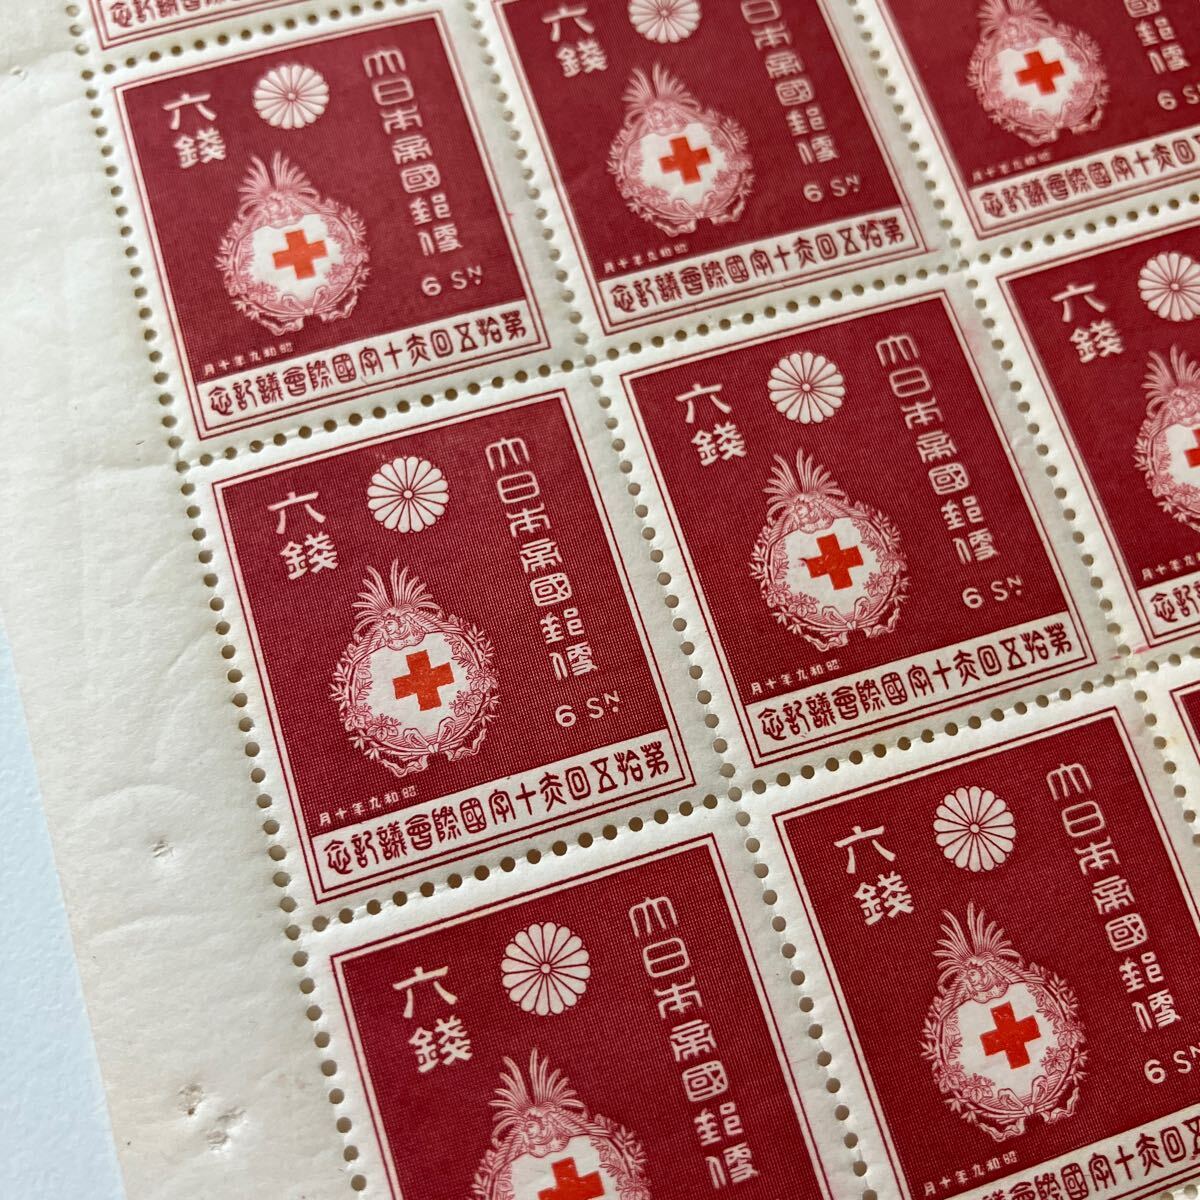 第15回赤十字国際会議 記念切手 6銭 1シート ★17_画像3